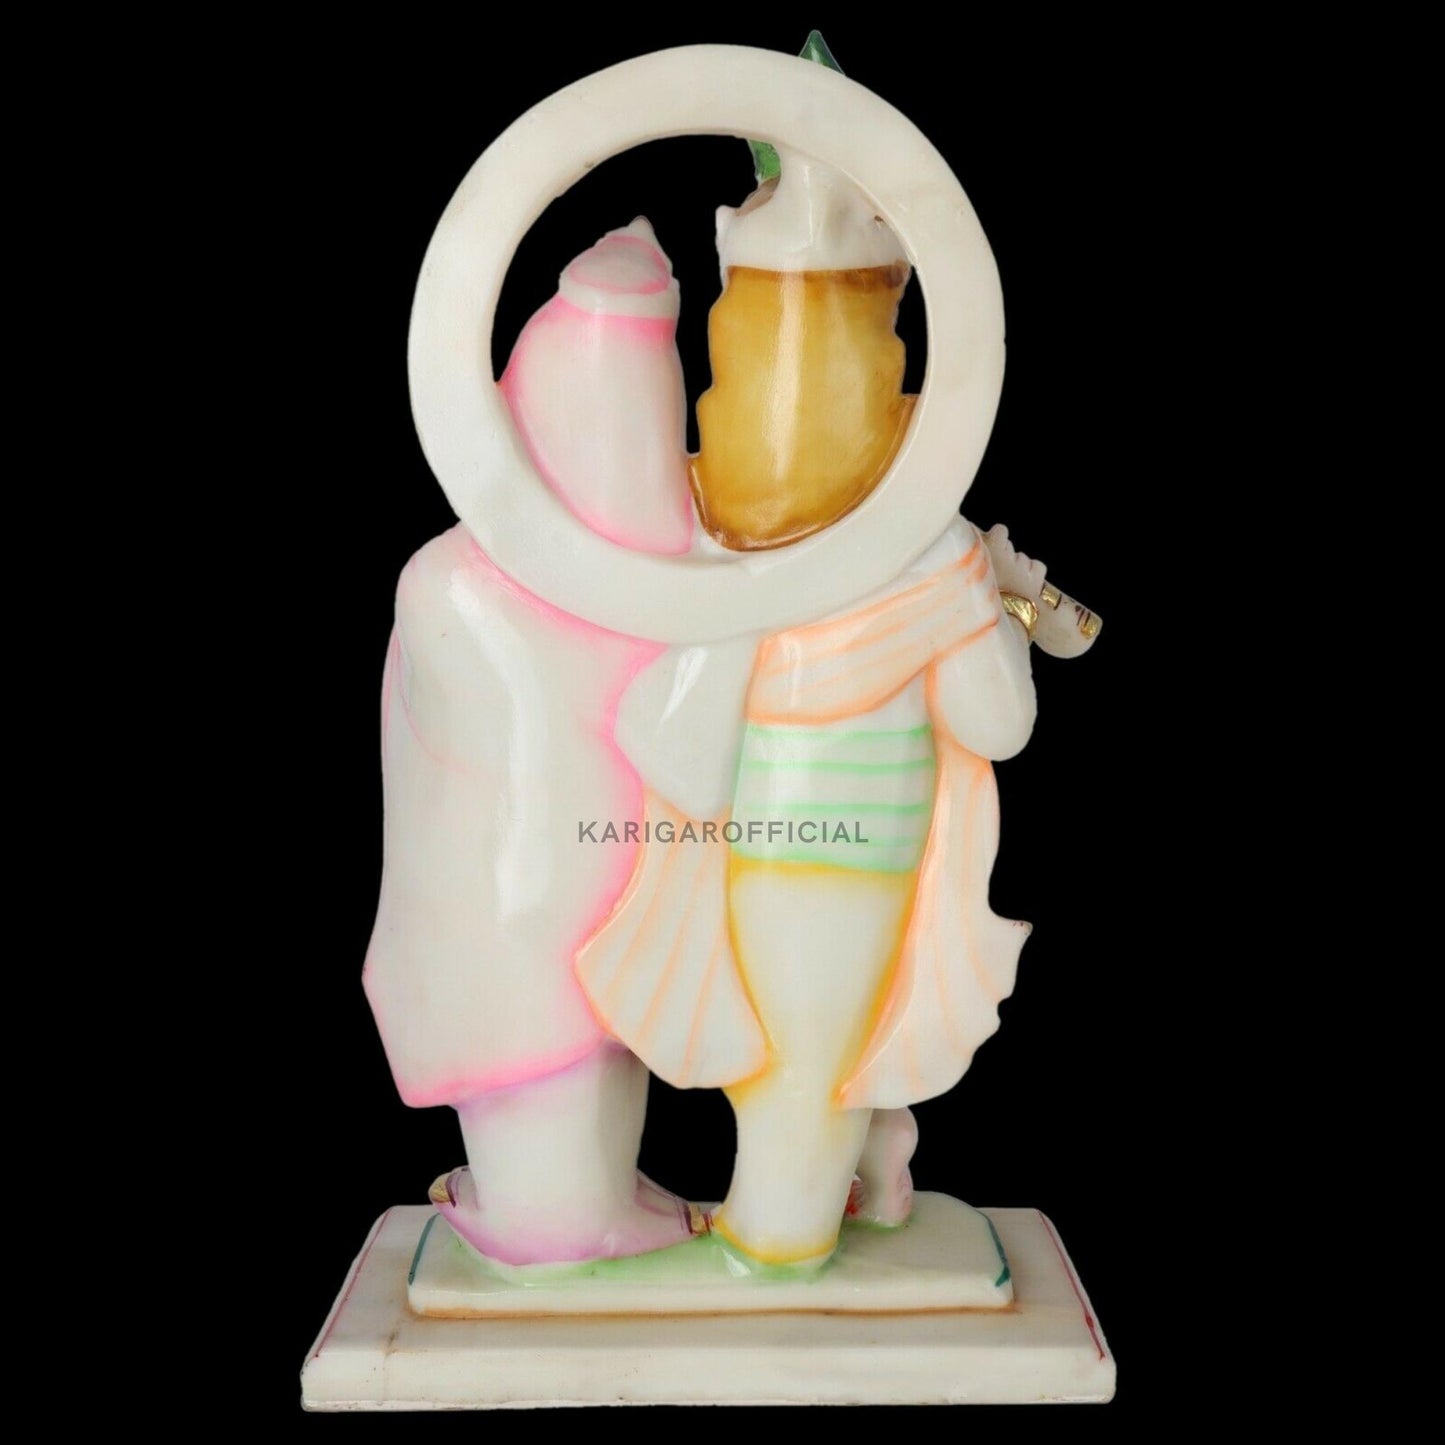 Estatua de Radha Krishna, figura de trabajo de hoja de oro, ídolo grande de Radha Krishna de mármol de 18 pulgadas, pareja divina hindú Murti pintada a mano, decoración de Pooja del templo del hogar, escultura de regalos de inauguración de la casa